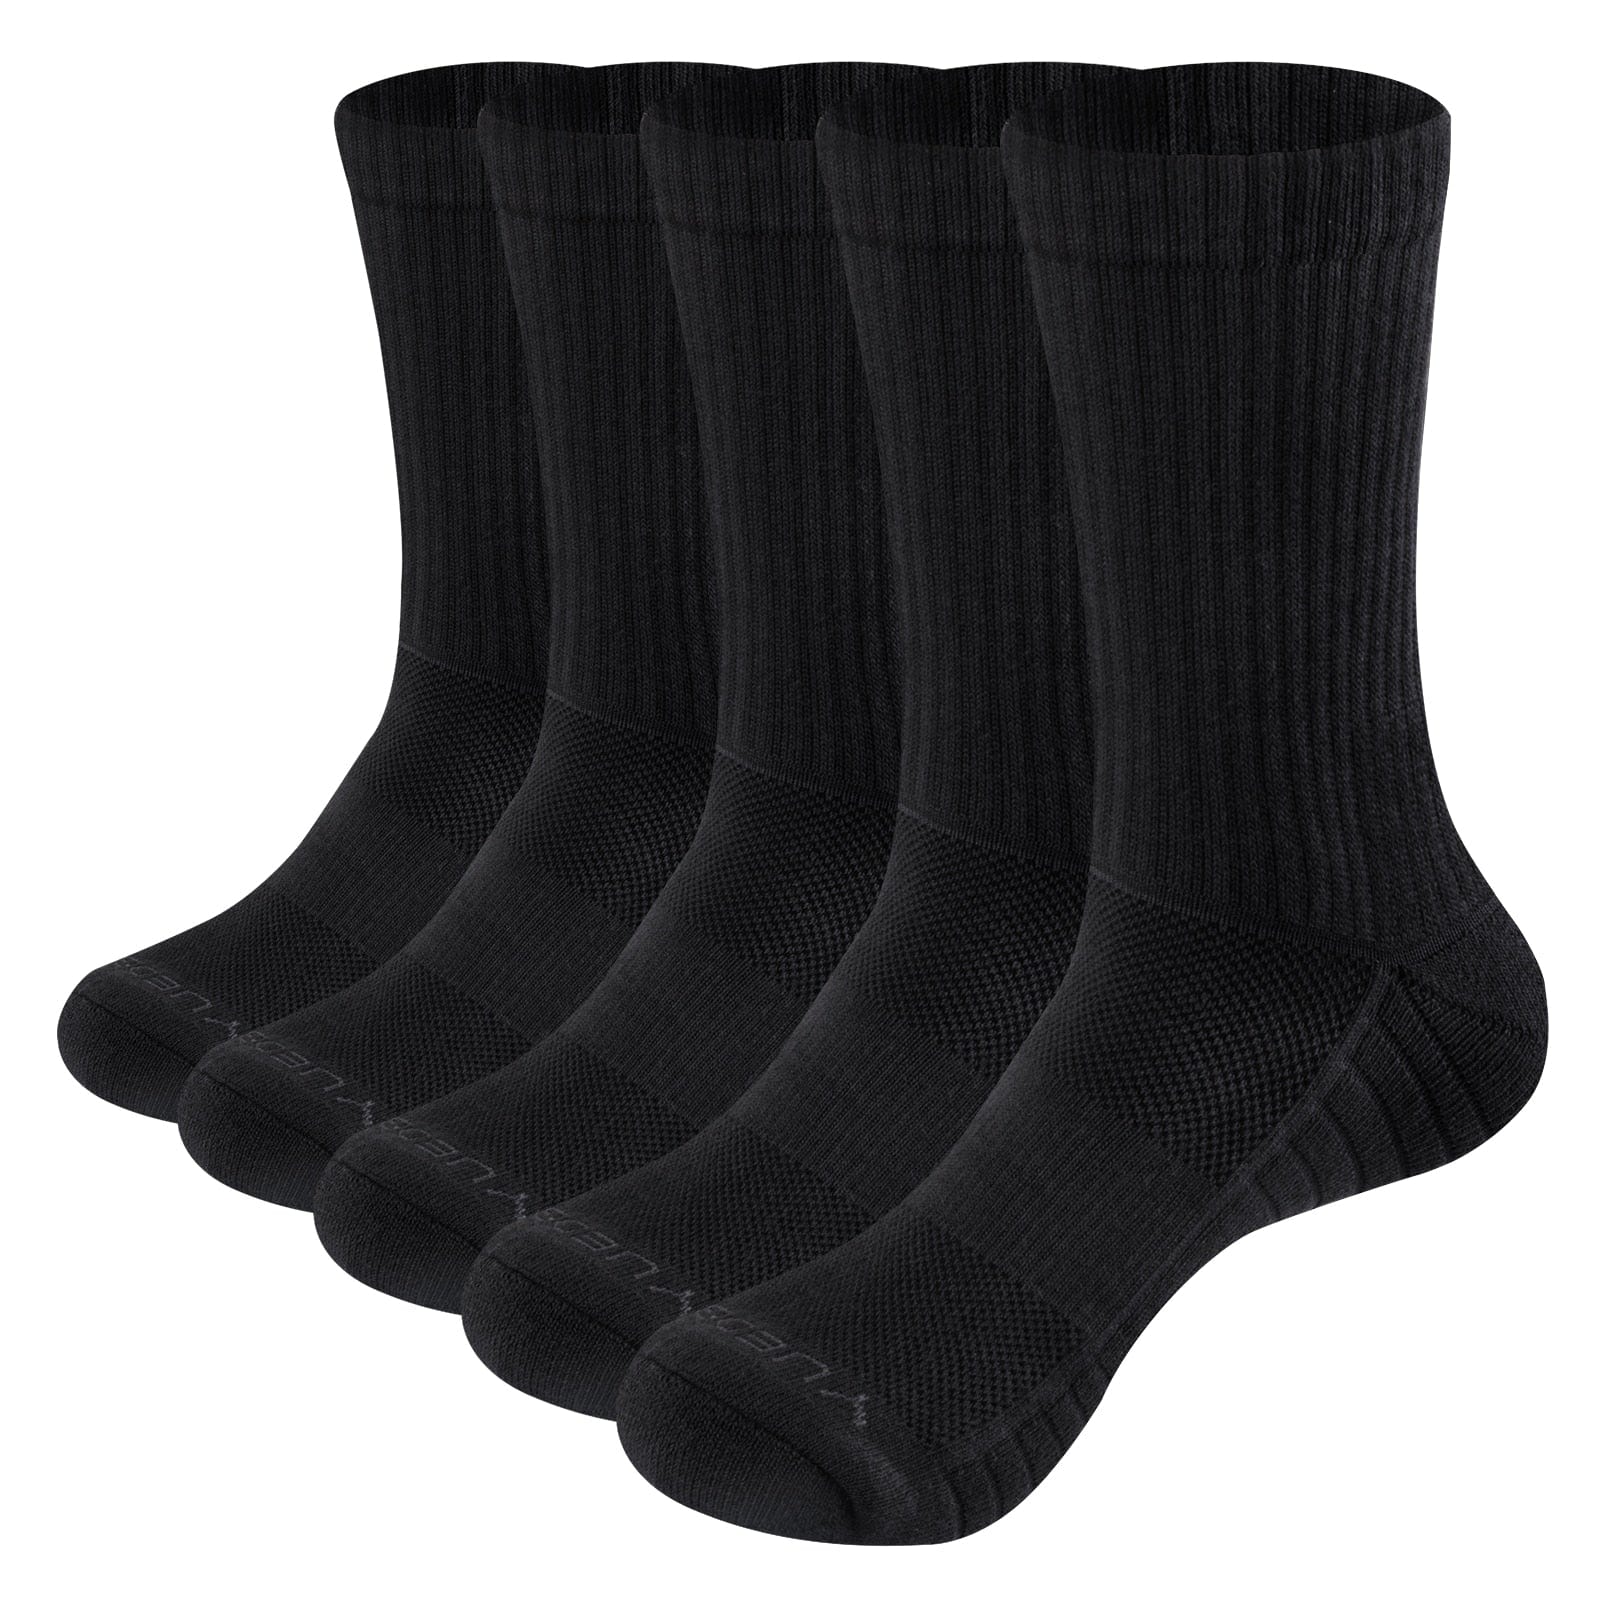 My Socks Noires / 5 Paires / 37-41 Chaussettes Coton Sport